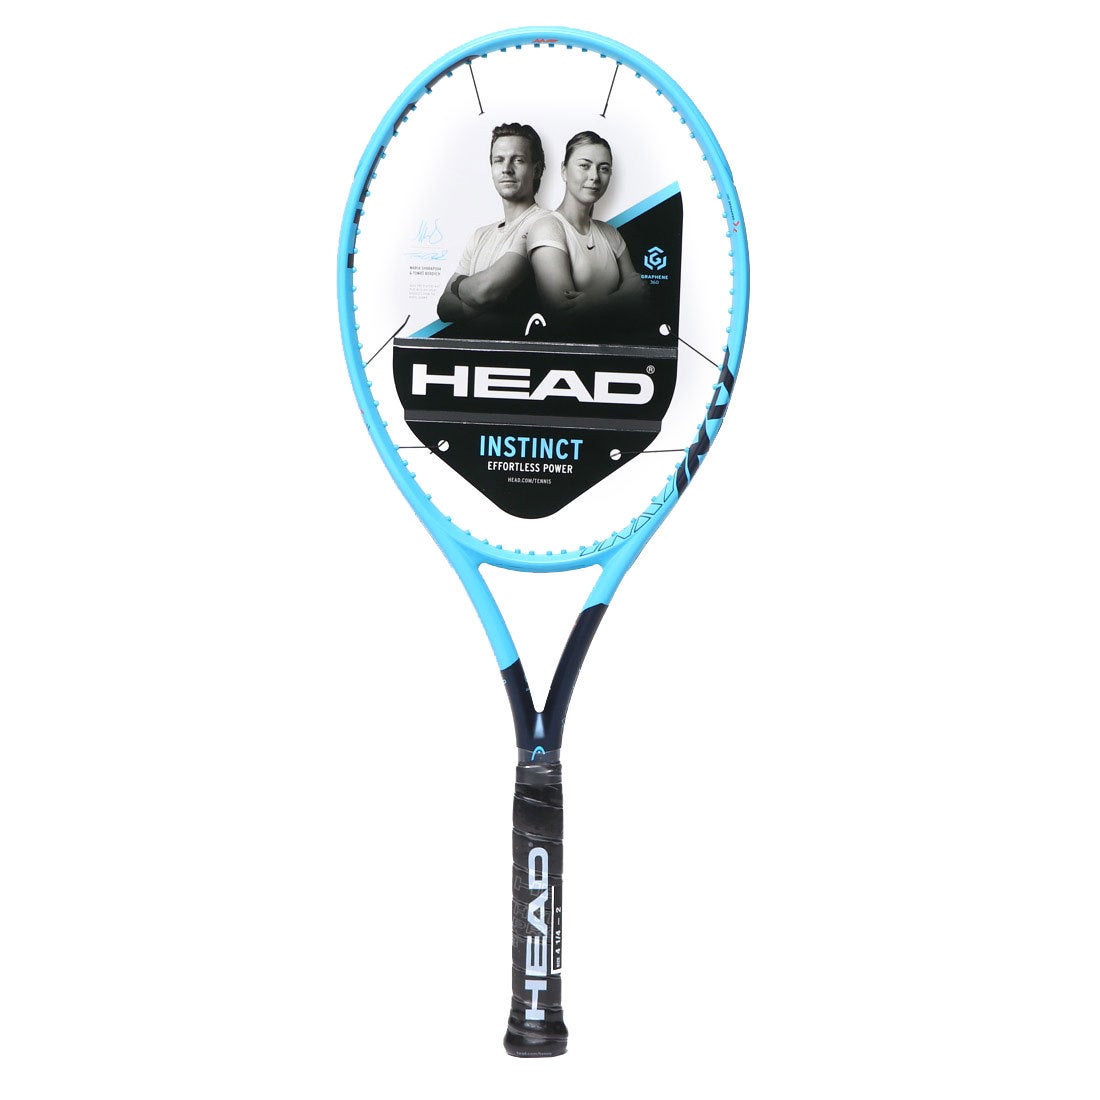 ヘッド HEAD 硬式テニス 未張りラケット グラフィン360 インスティンクト MP 230819